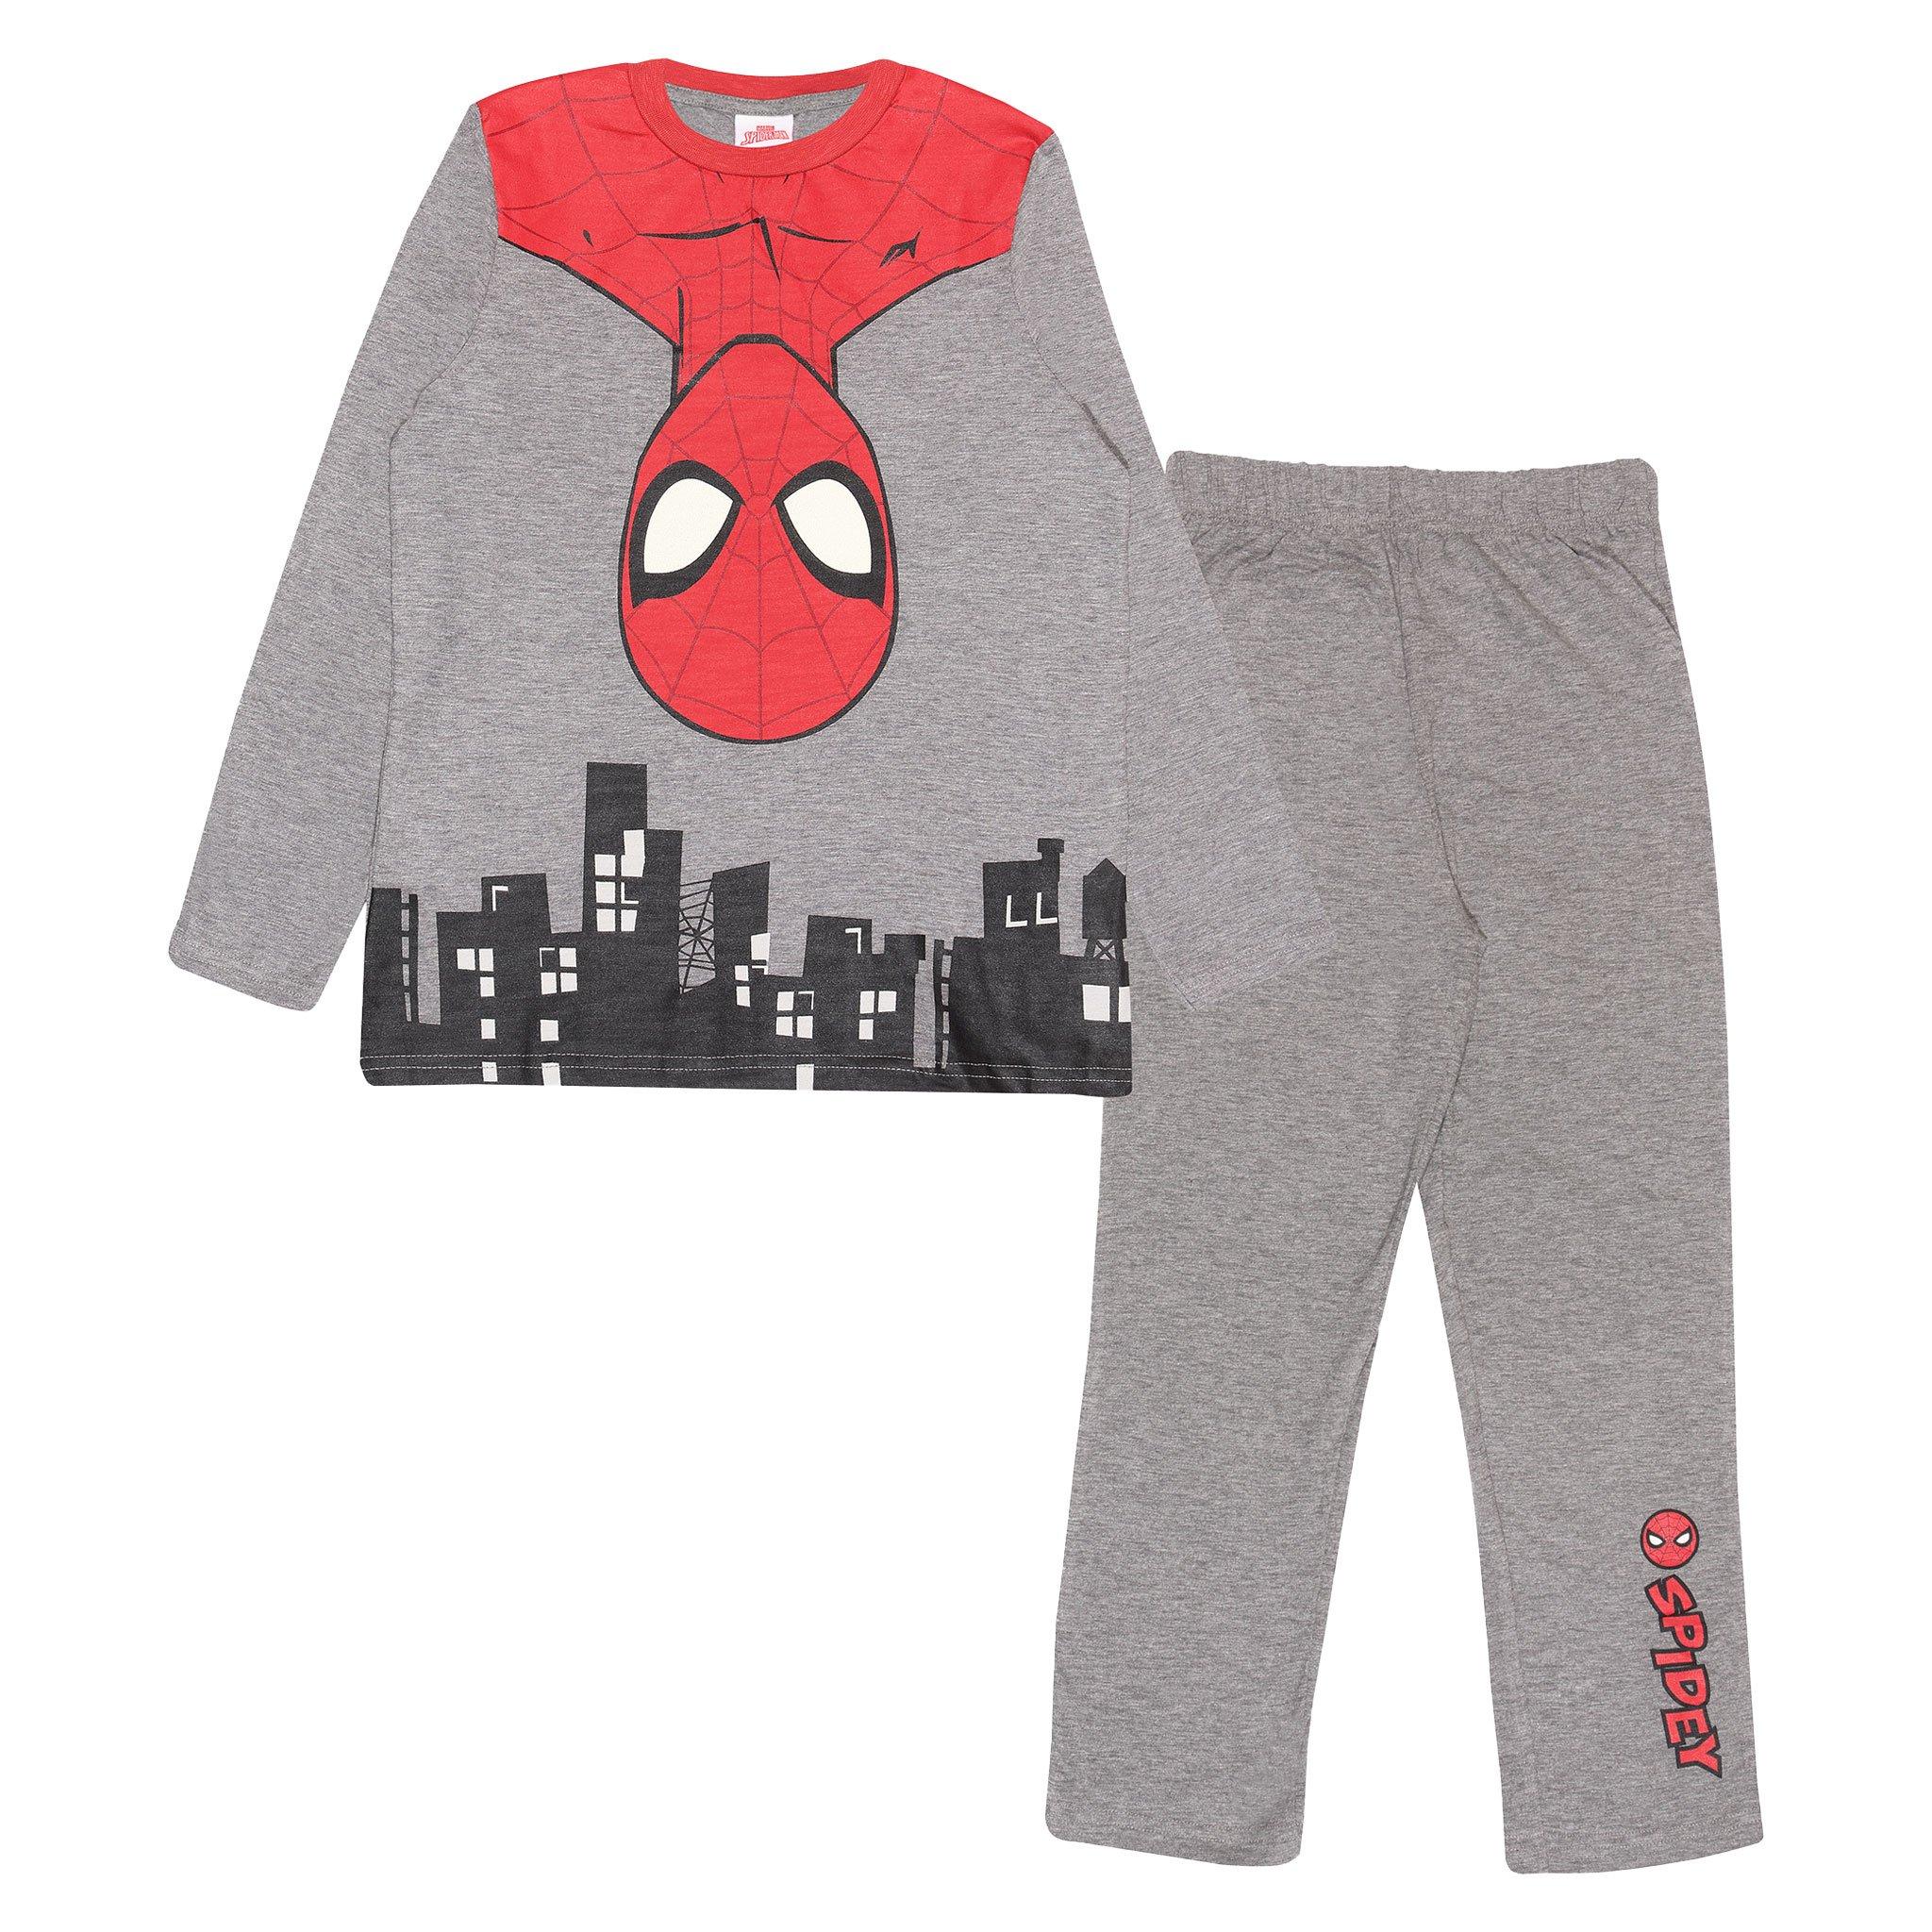 Avengers Comics Spiderman Long Pyjamas